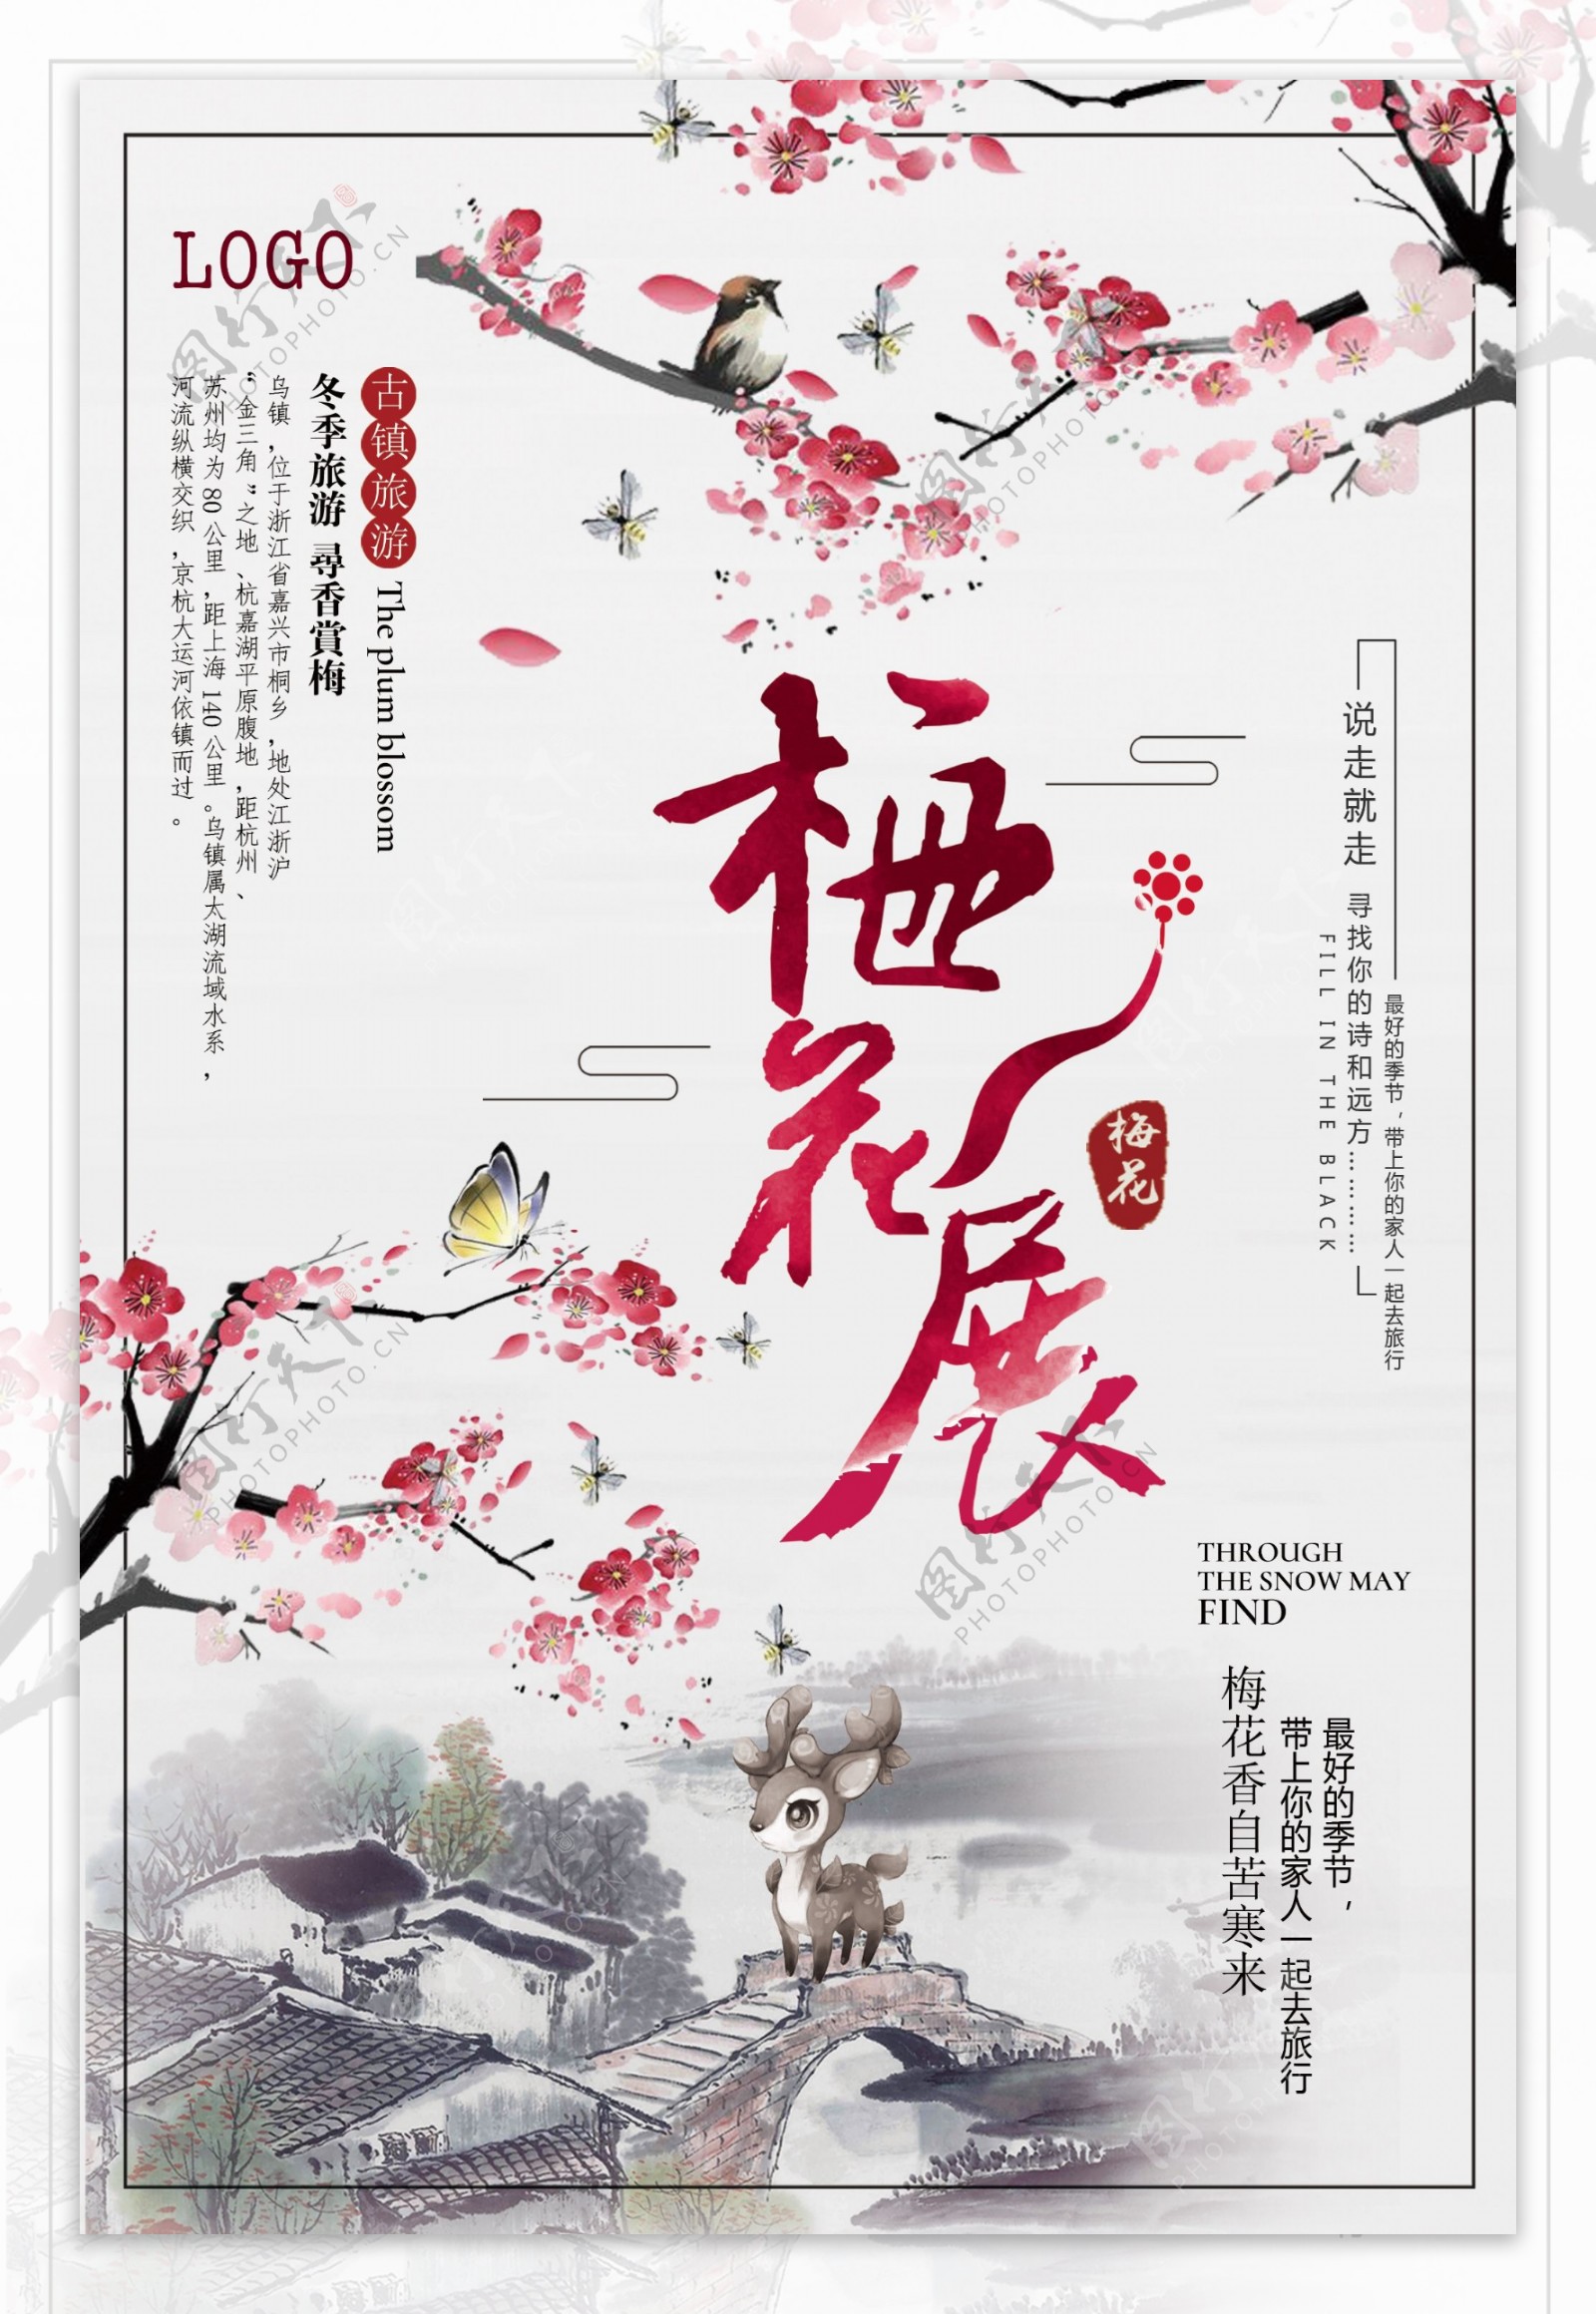 中国风水彩水墨梅花展海报